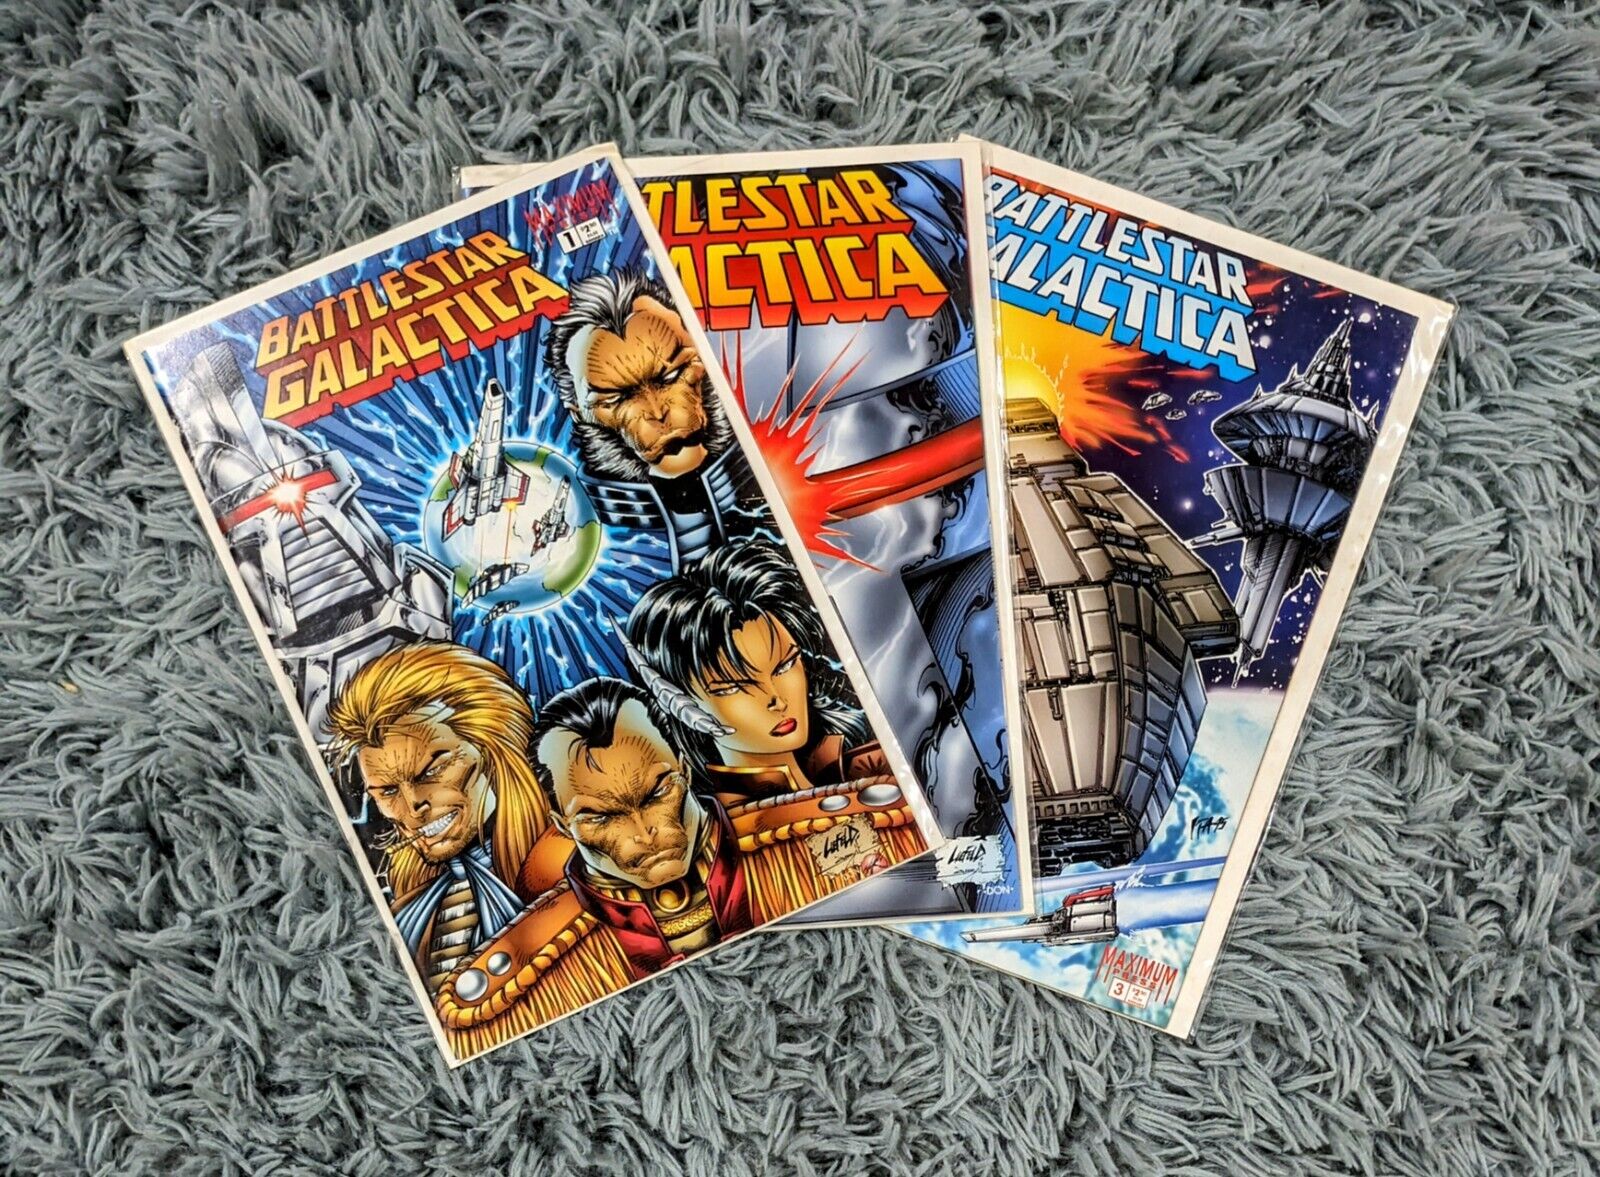 Maximum Press Battlestar Galactica 1995 Lot Run of Issues #1-3 Comic Books